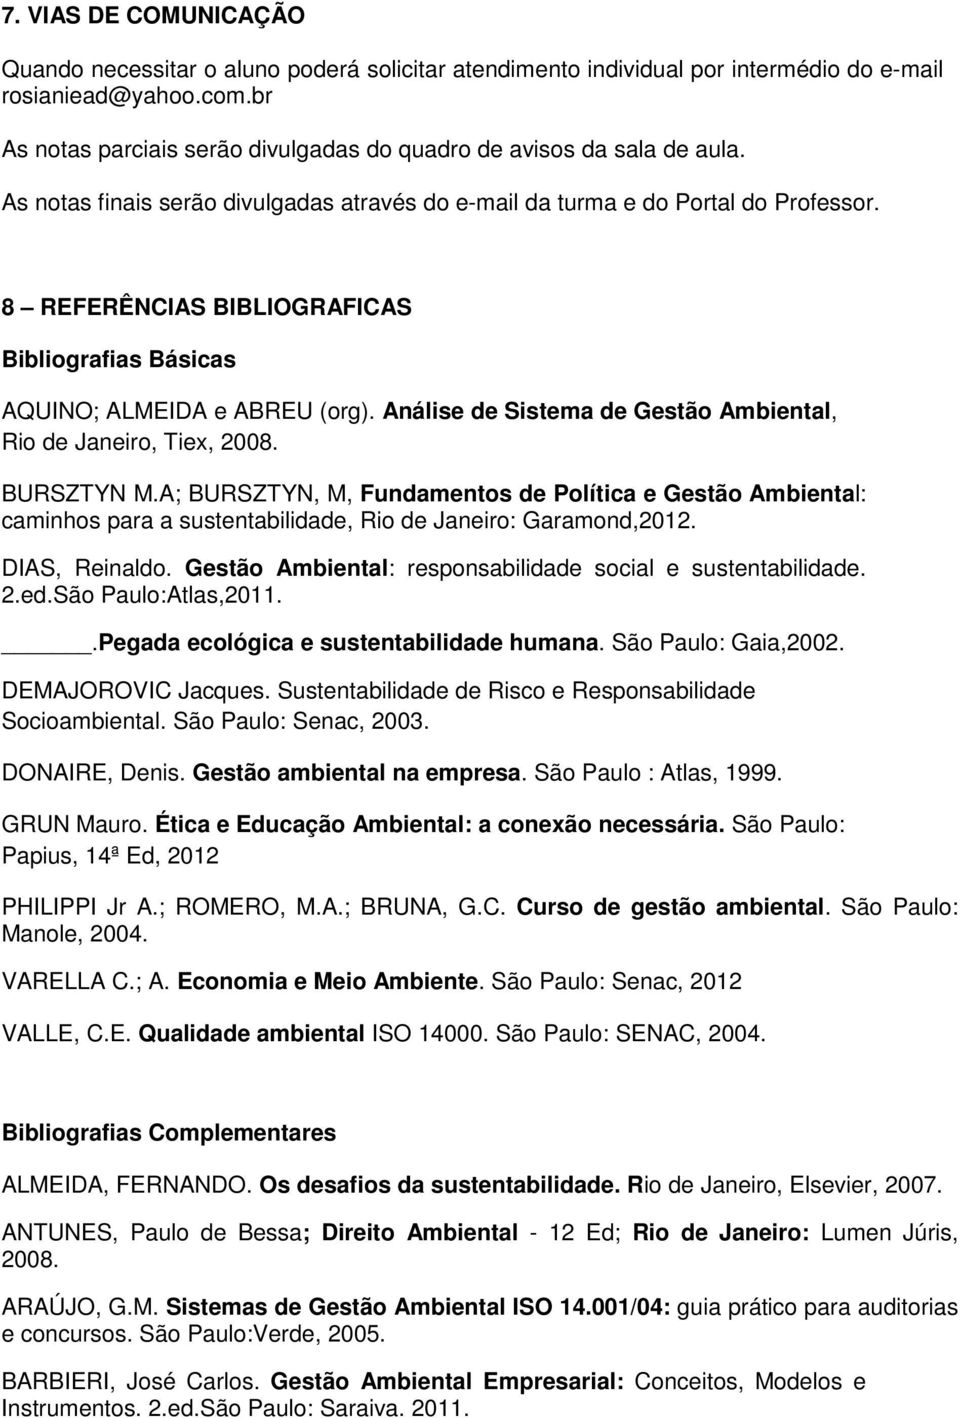 8 REFERÊNCIAS BIBLIOGRAFICAS Bibliografias Básicas AQUINO; ALMEIDA e ABREU (org). Análise de Sistema de Gestão Ambiental, Rio de Janeiro, Tiex, 2008. BURSZTYN M.